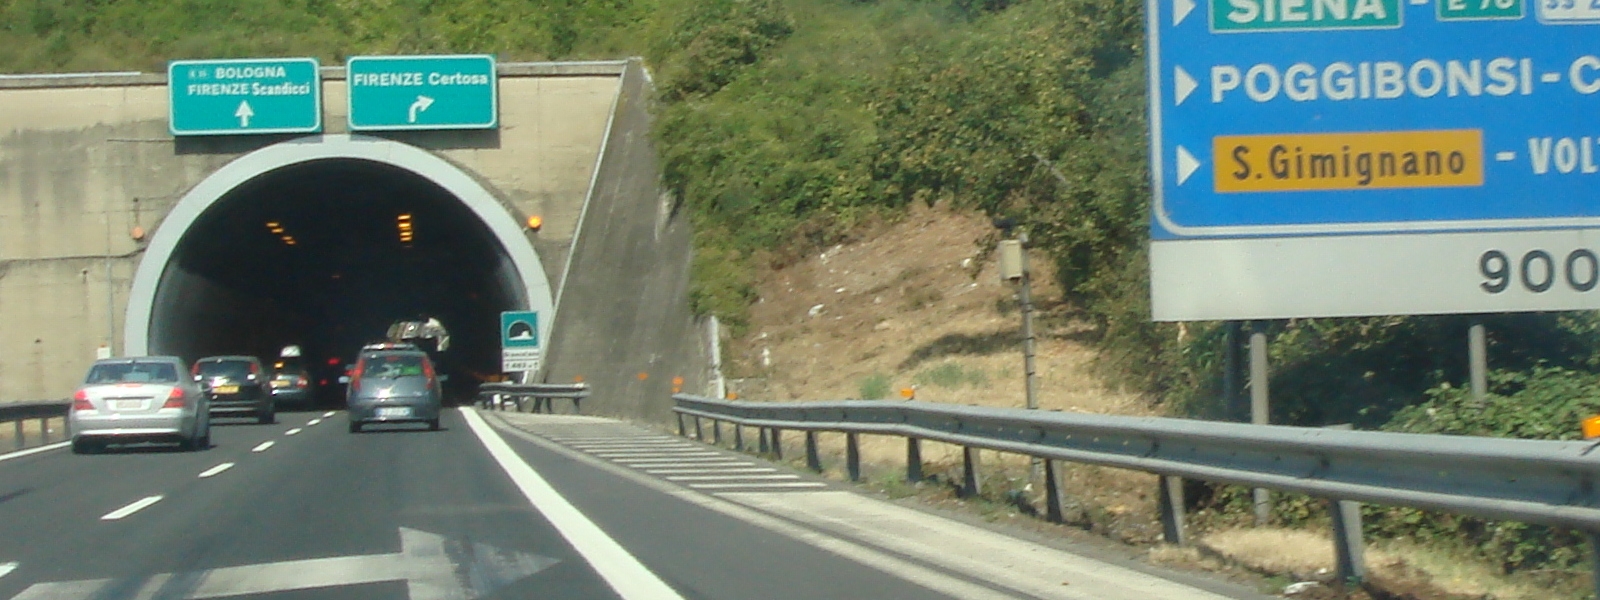 Autostrade: ripresa delle trattative di rinnovo CCNL